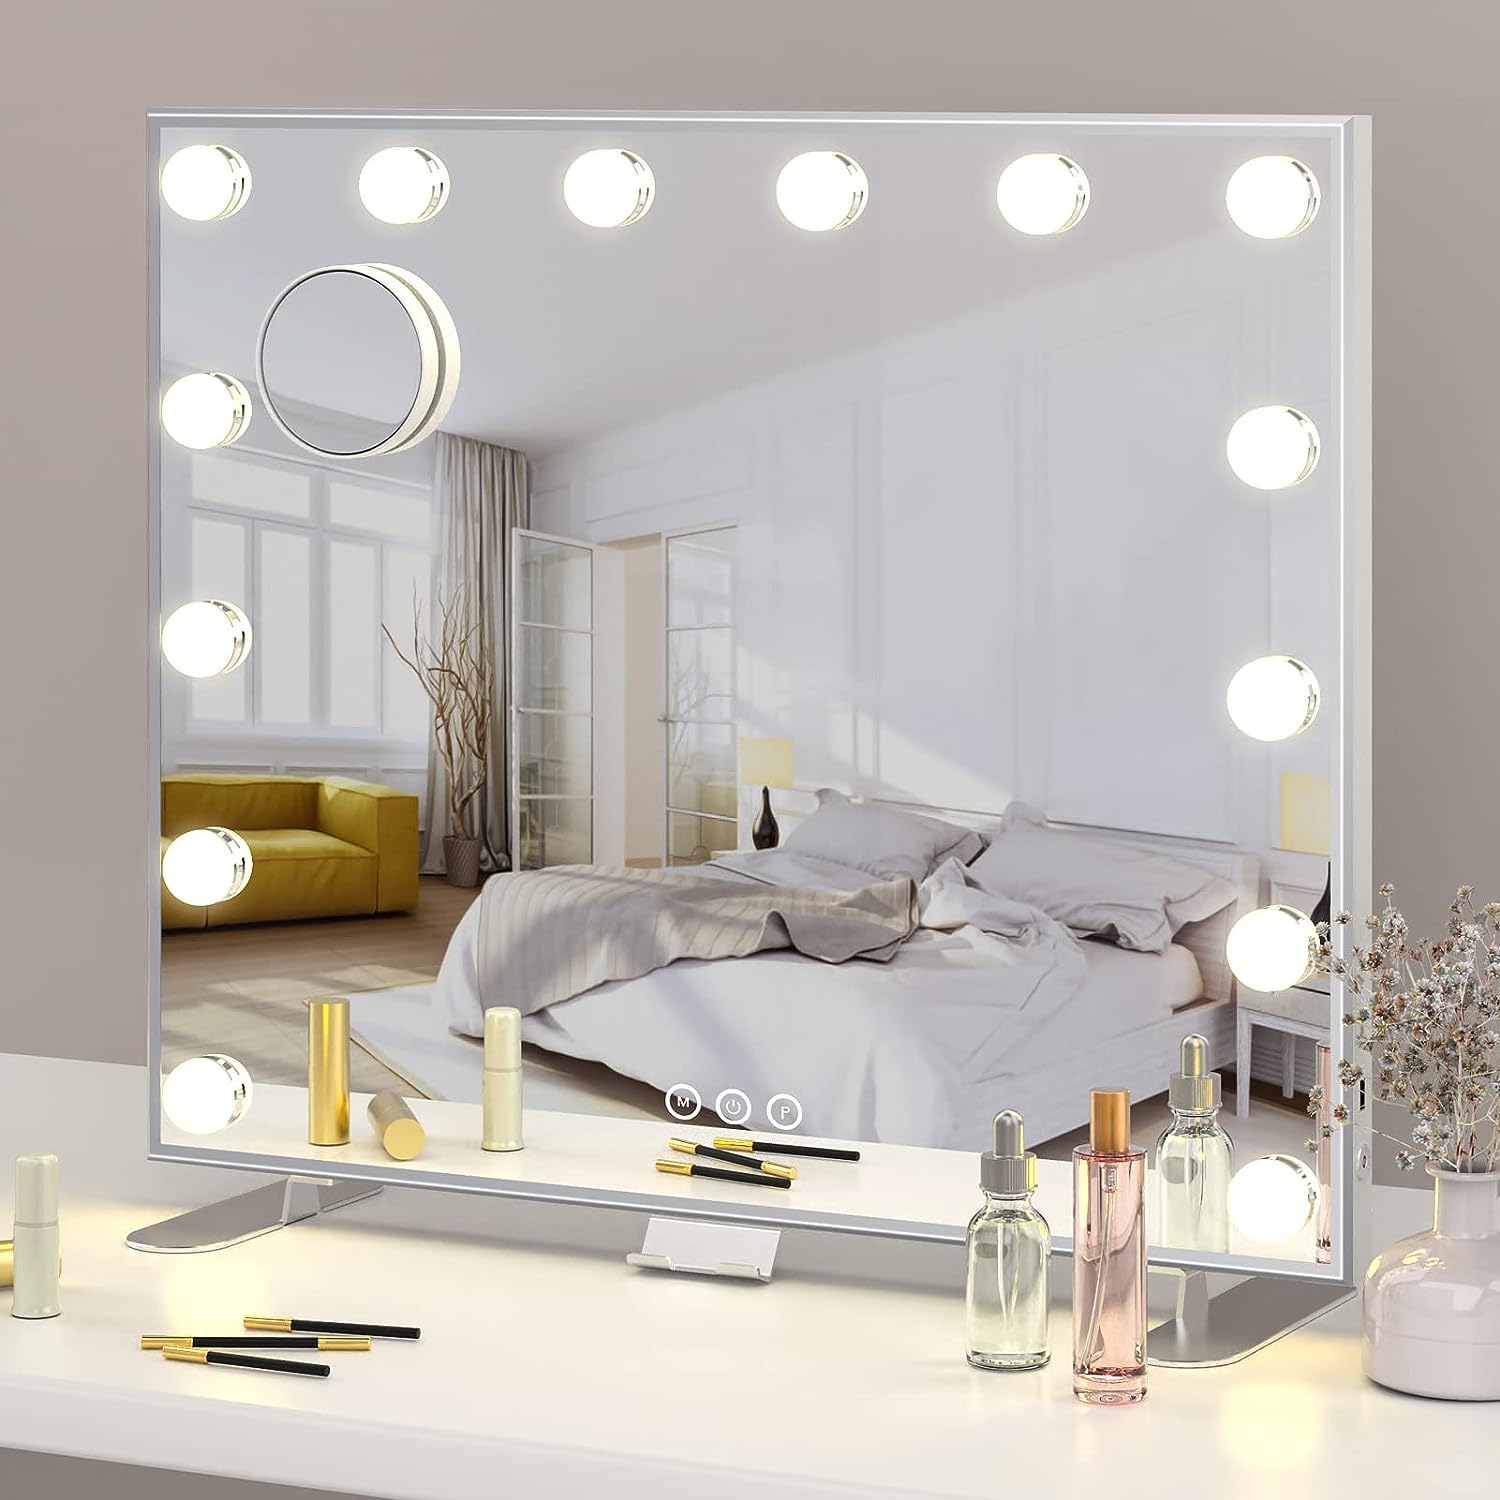 Specchi con luci e sedie per make-up: prendersi cura di sé in ogni